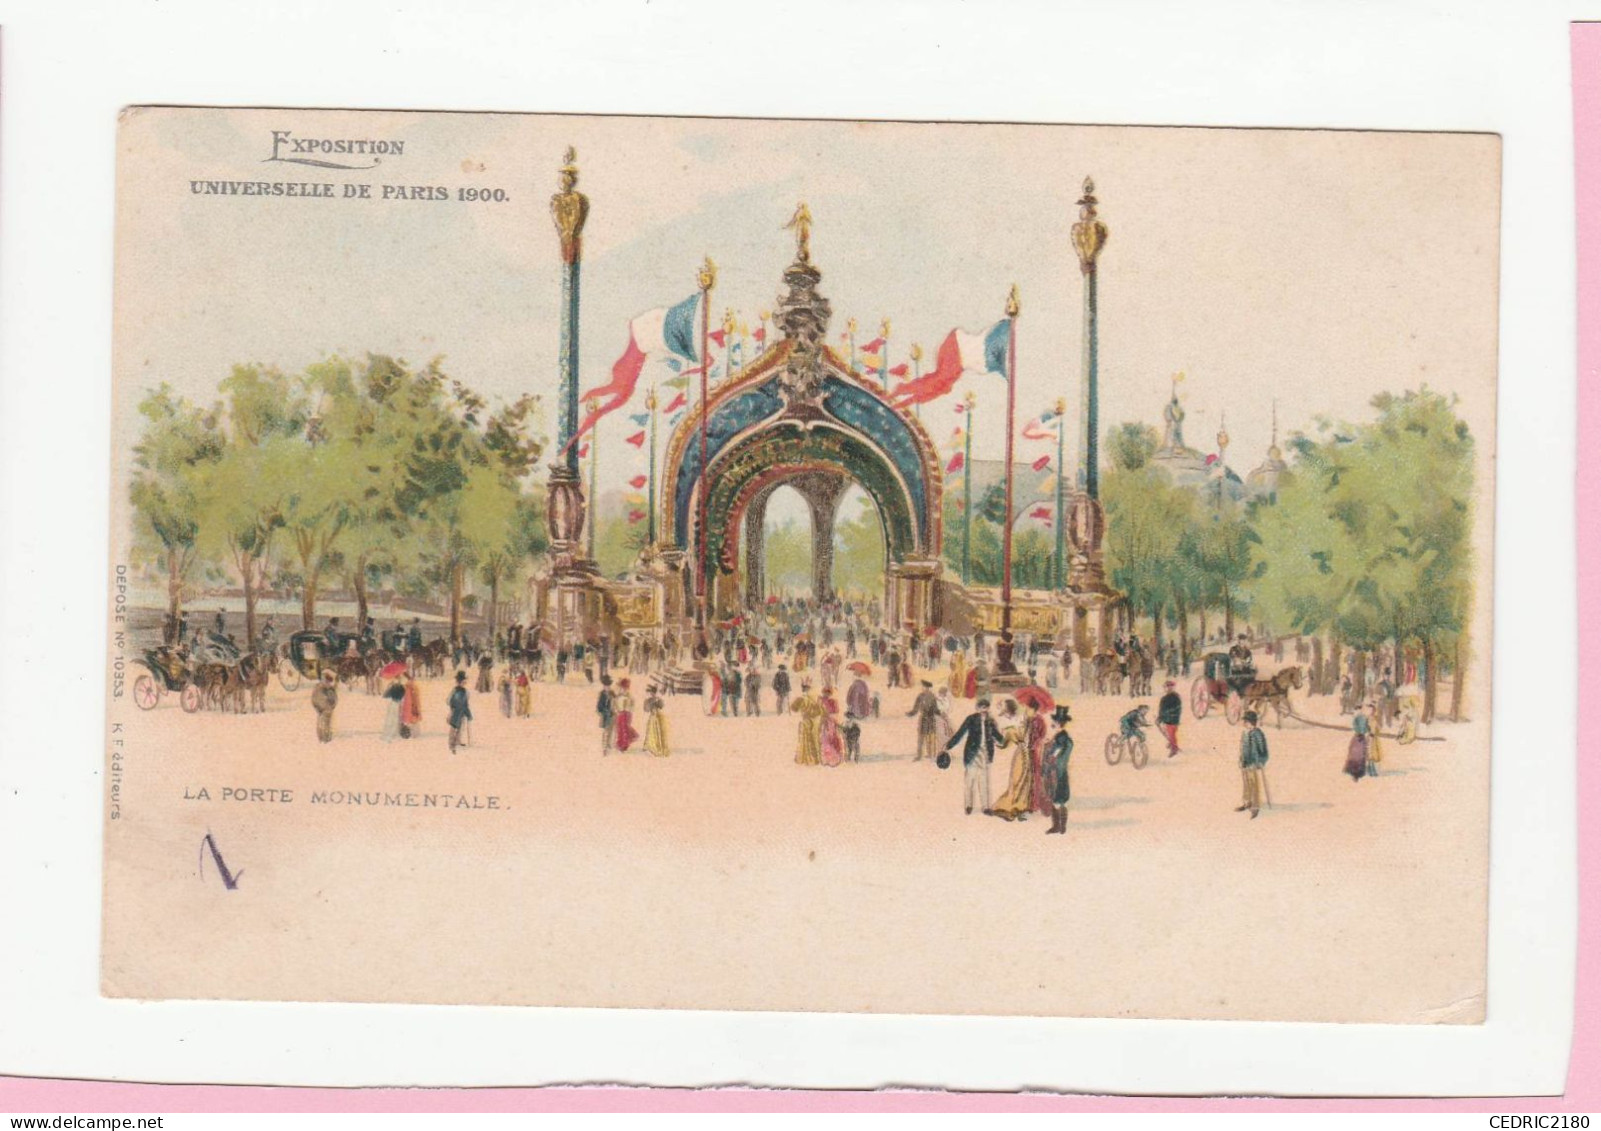 EXPOSITION UNIVERSELLE DE PARIS 1900 LA PORTE MONUMENTALE - Expositions